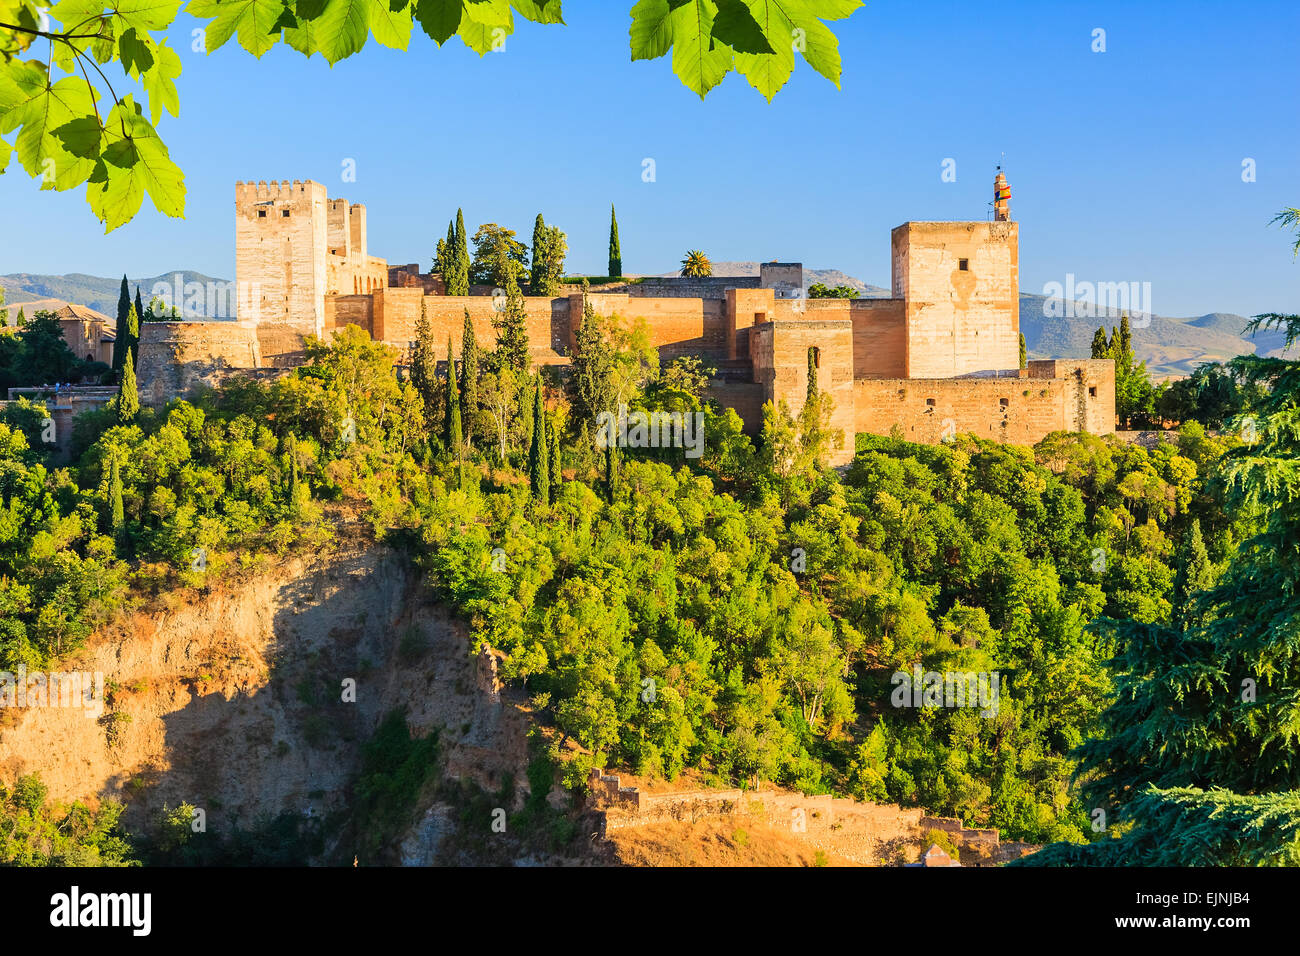 Alhambra palace, Granada, Spain Stock Photo